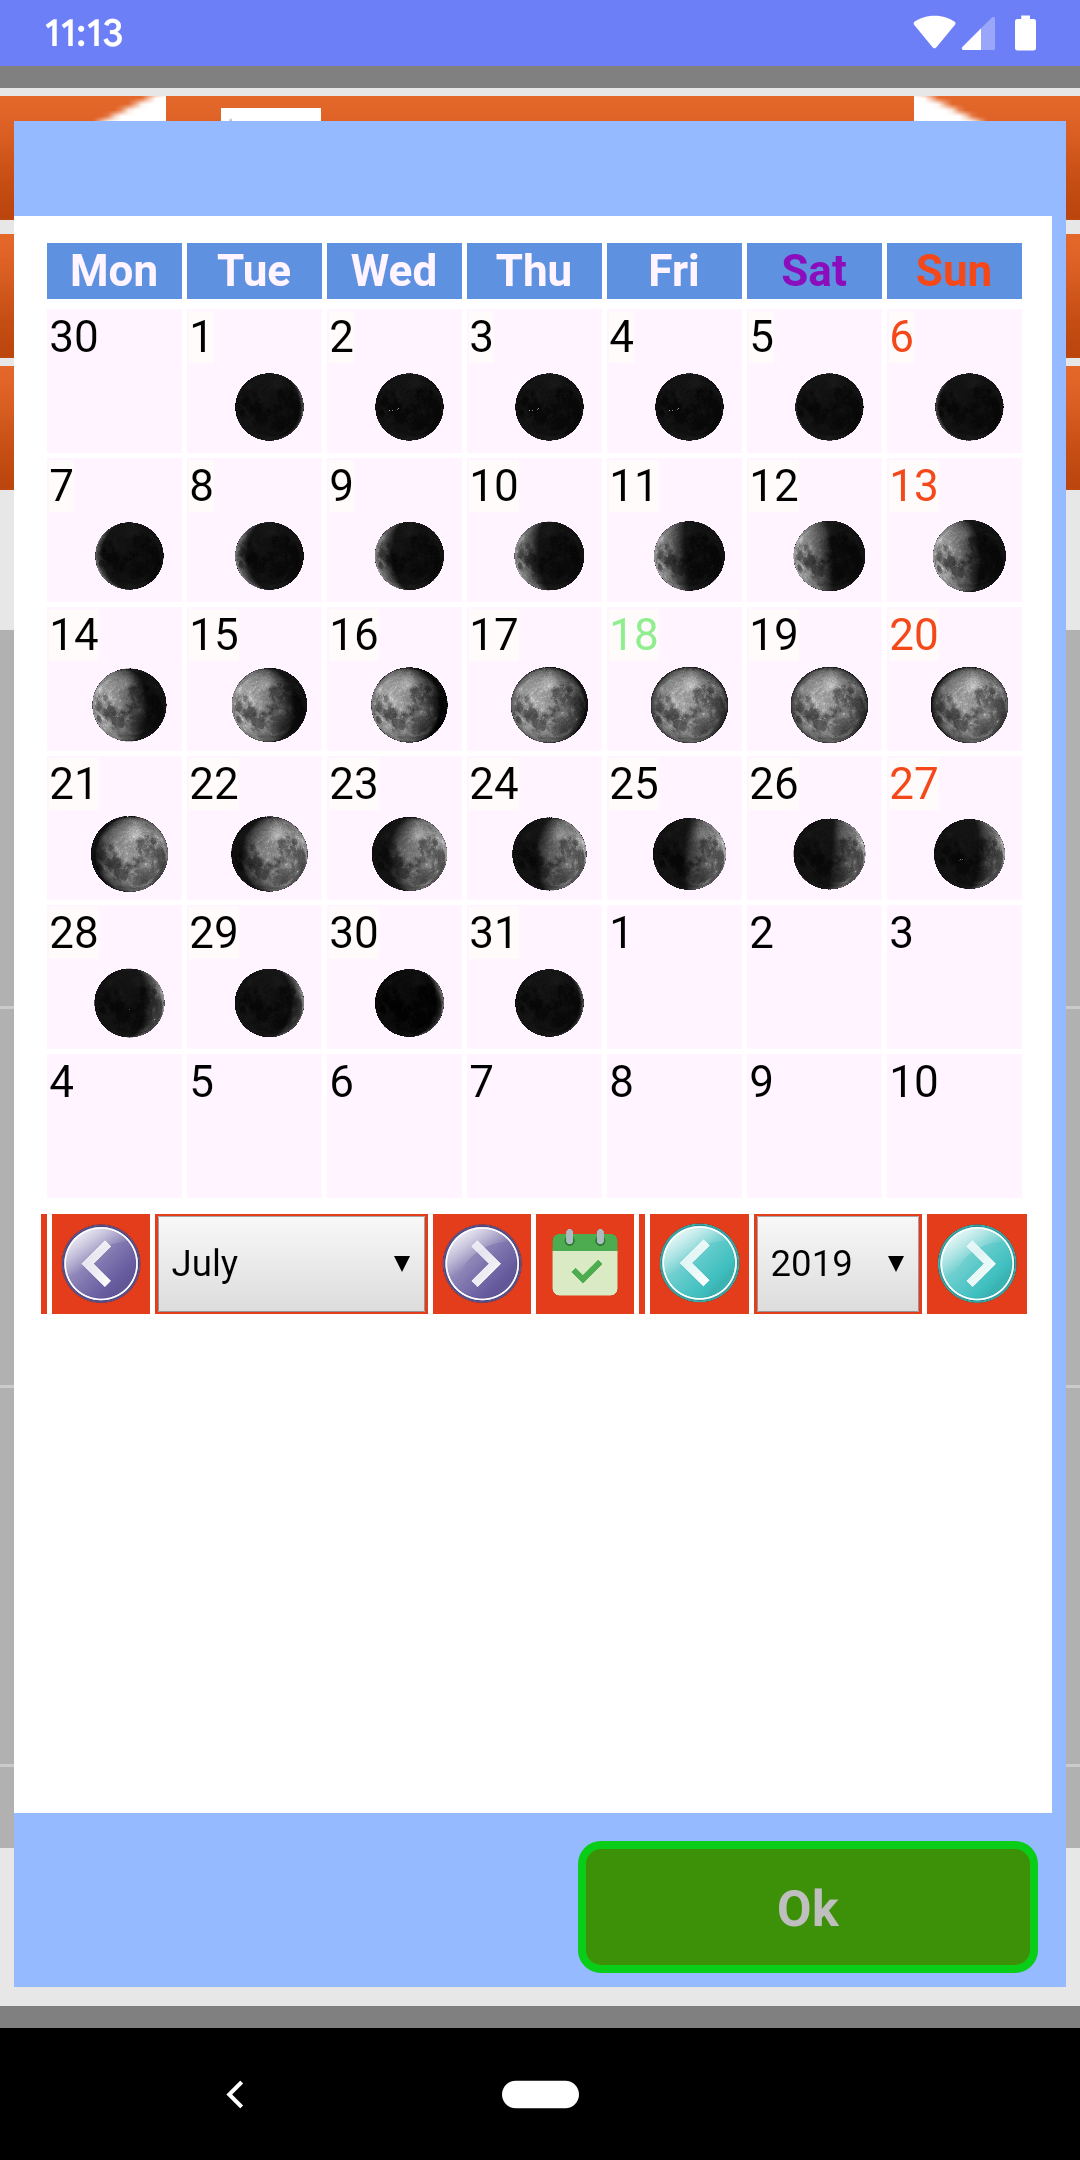 Calendario Lunar Organico